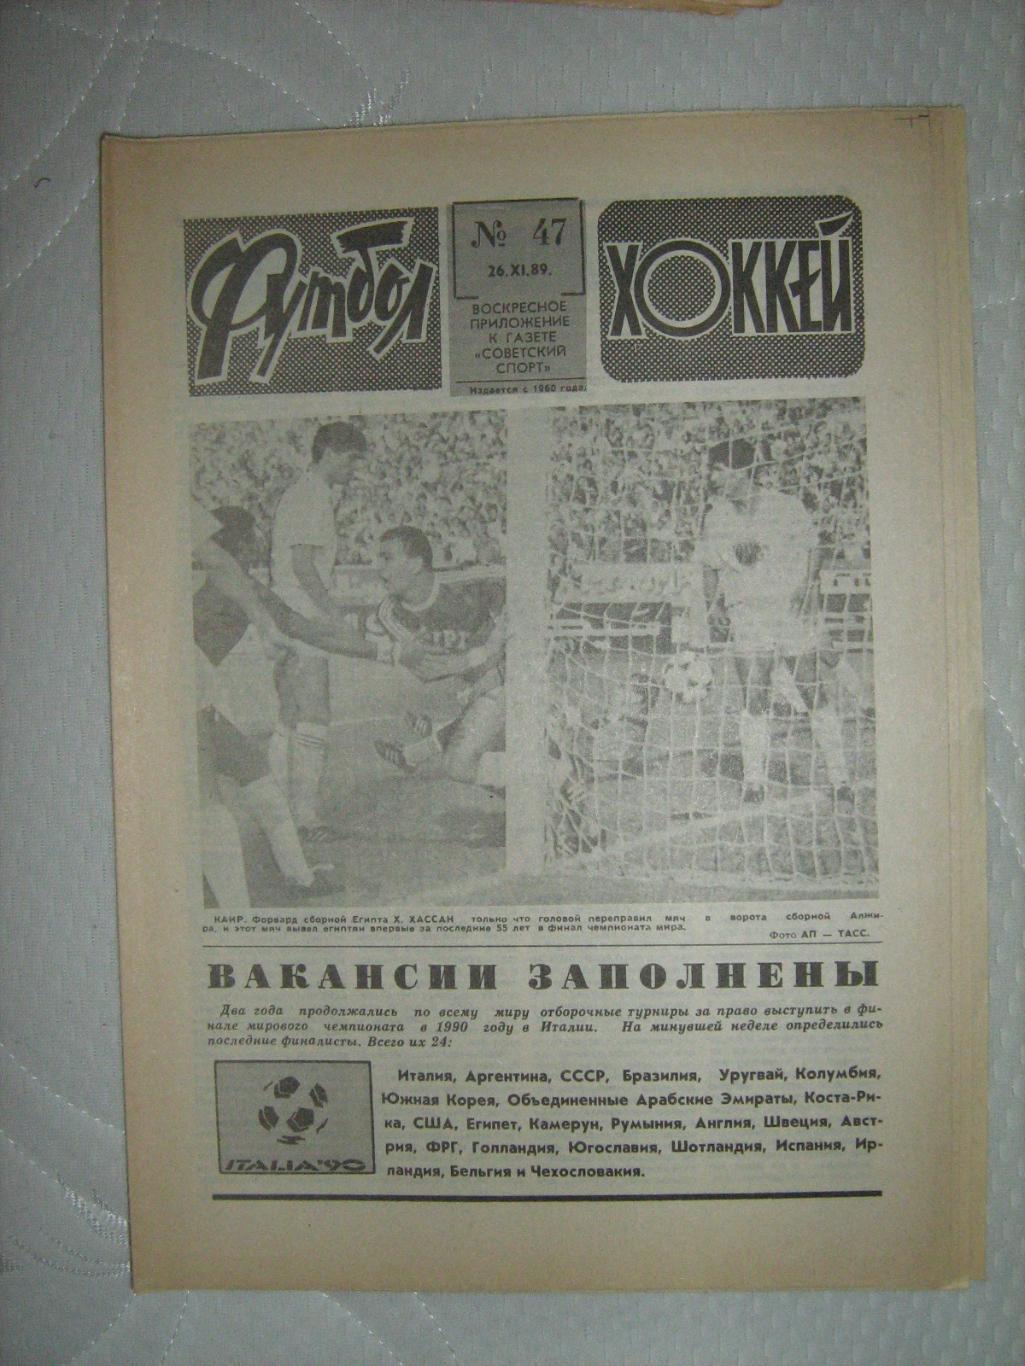 Еженедельник Футбол - Хоккей - 1989(47,41,40,43,42,40,39,37)